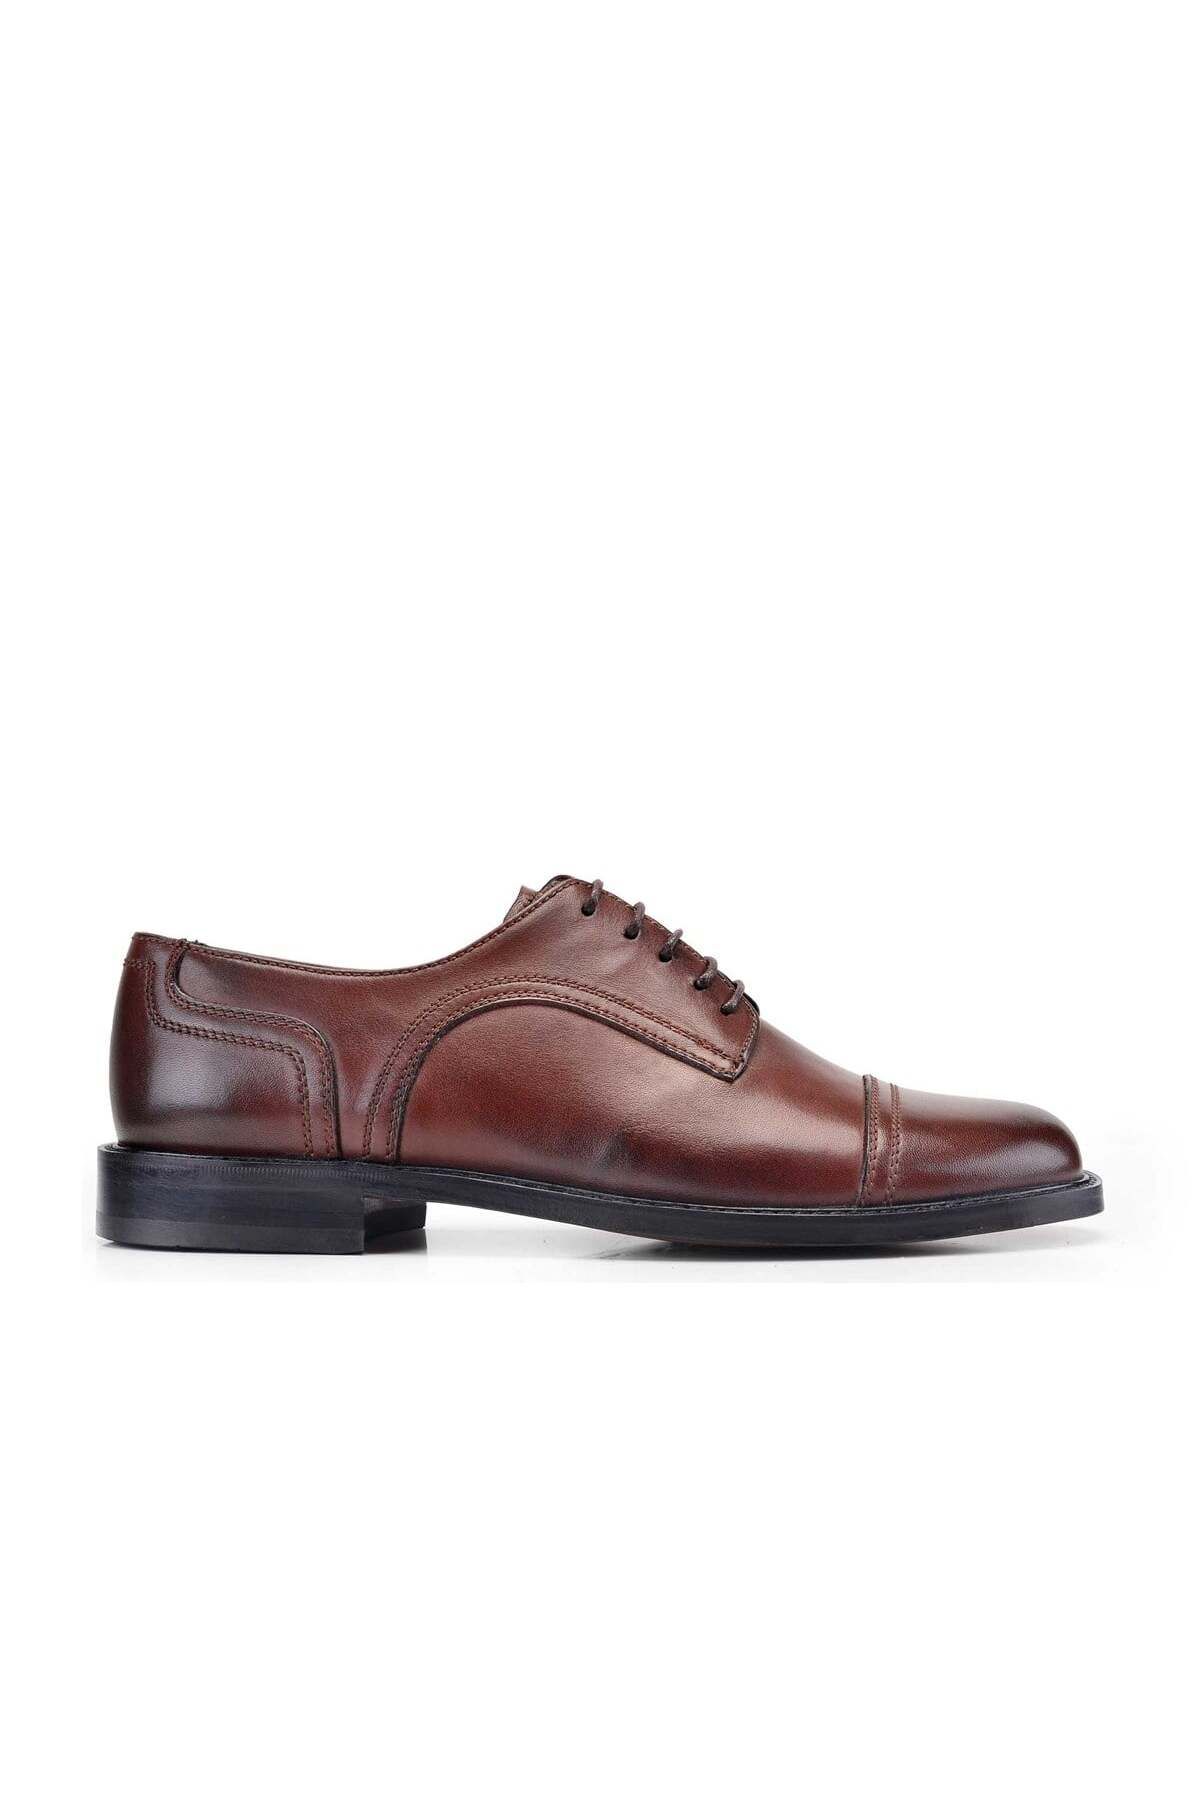 Nevzat Onay Hakiki Deri Kahverengi Klasik Bağcıklı Kösele Erkek Ayakkabı -8772-